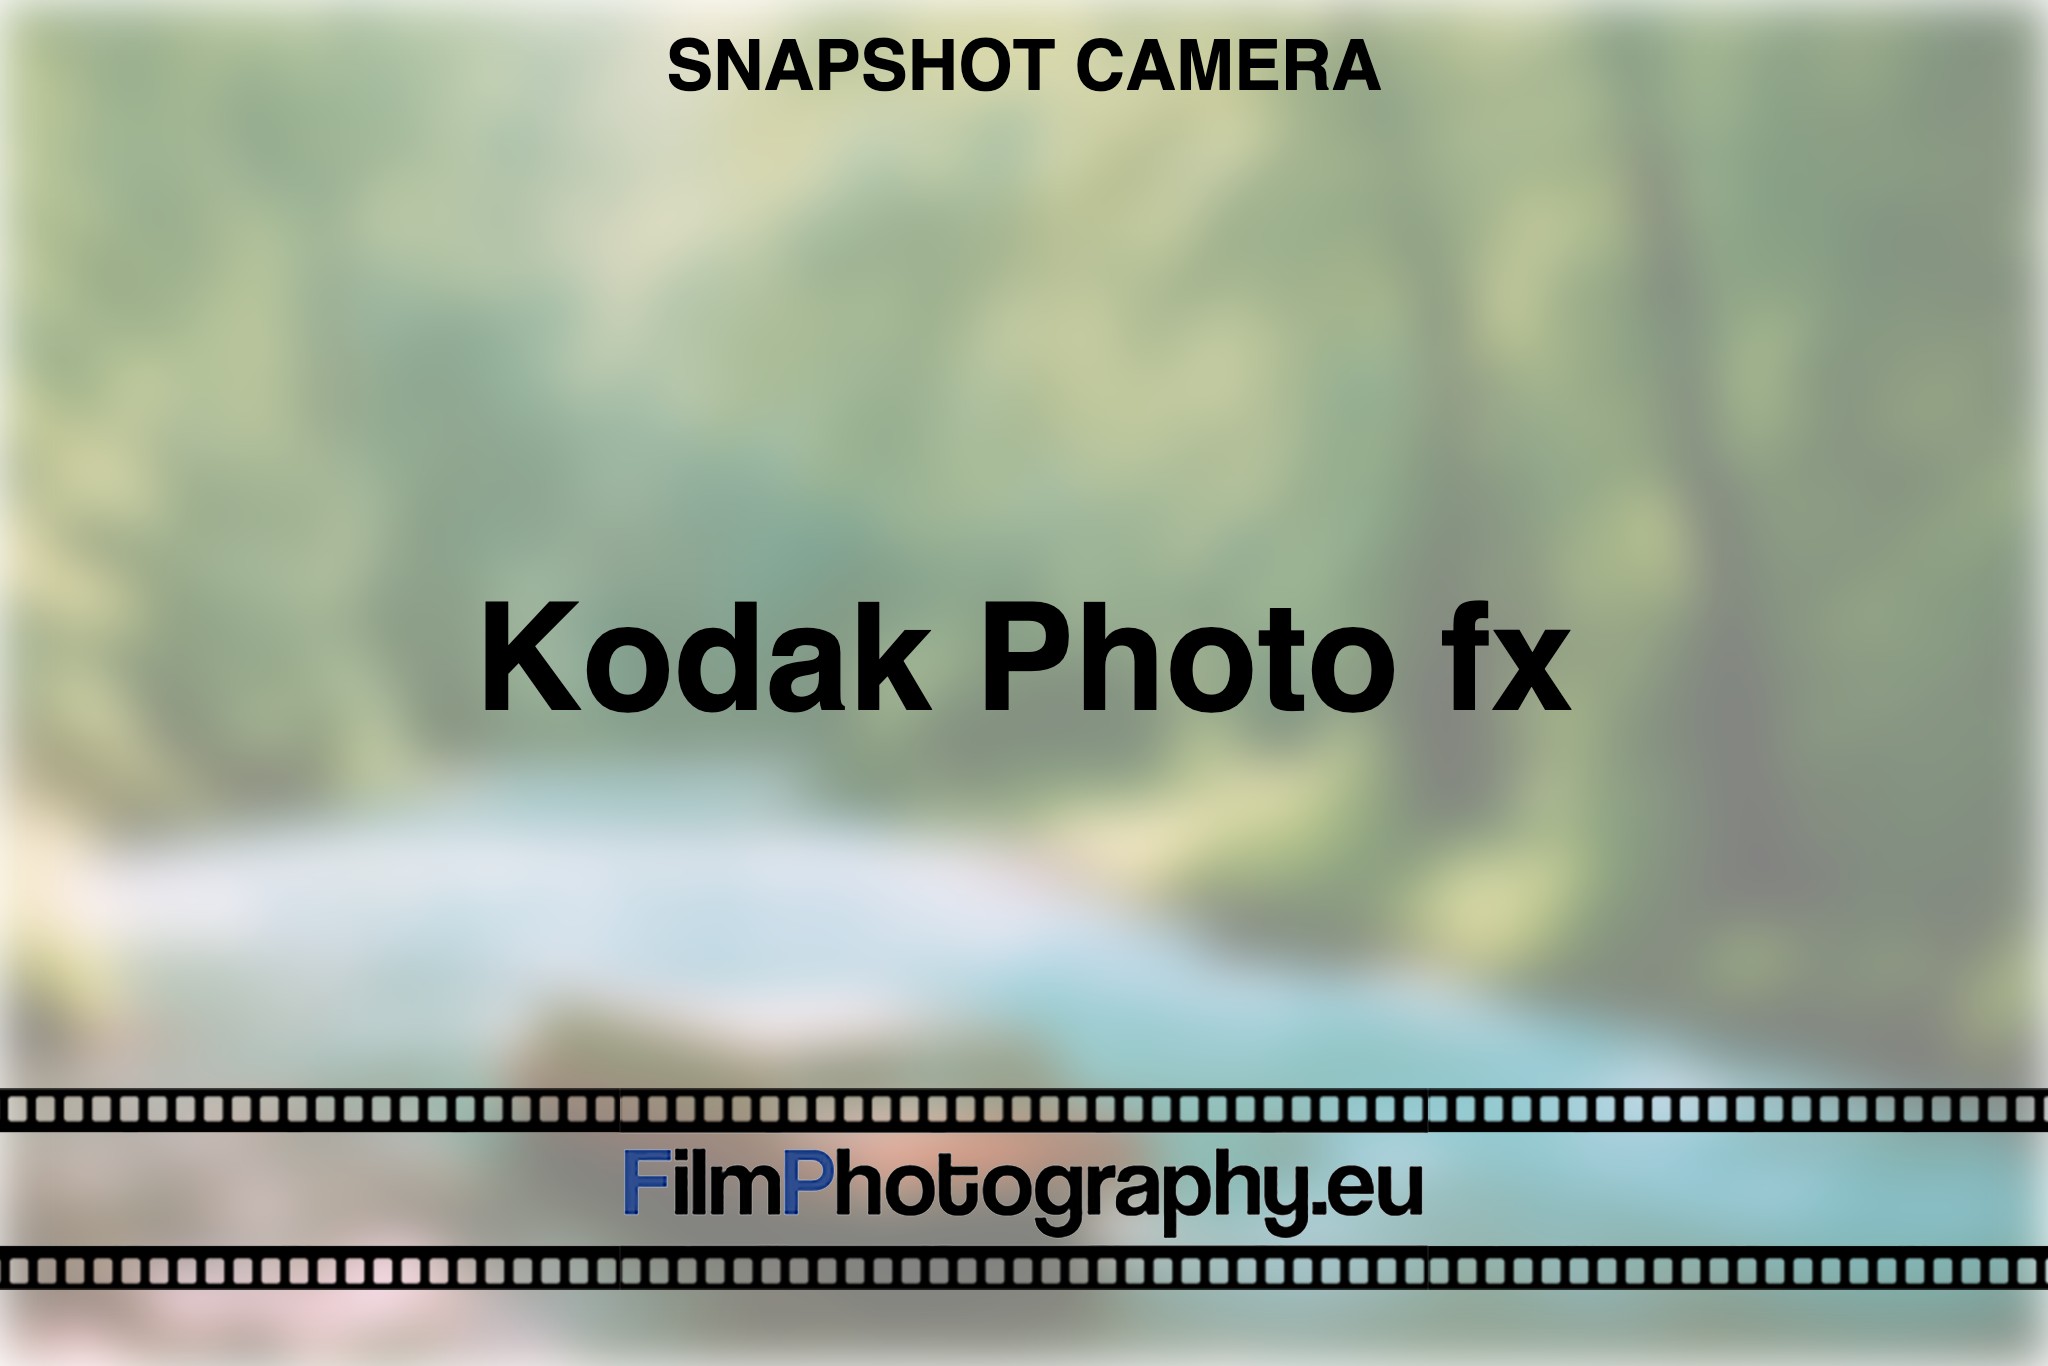 kodak-photo-fx-snapshot-camera-bnv